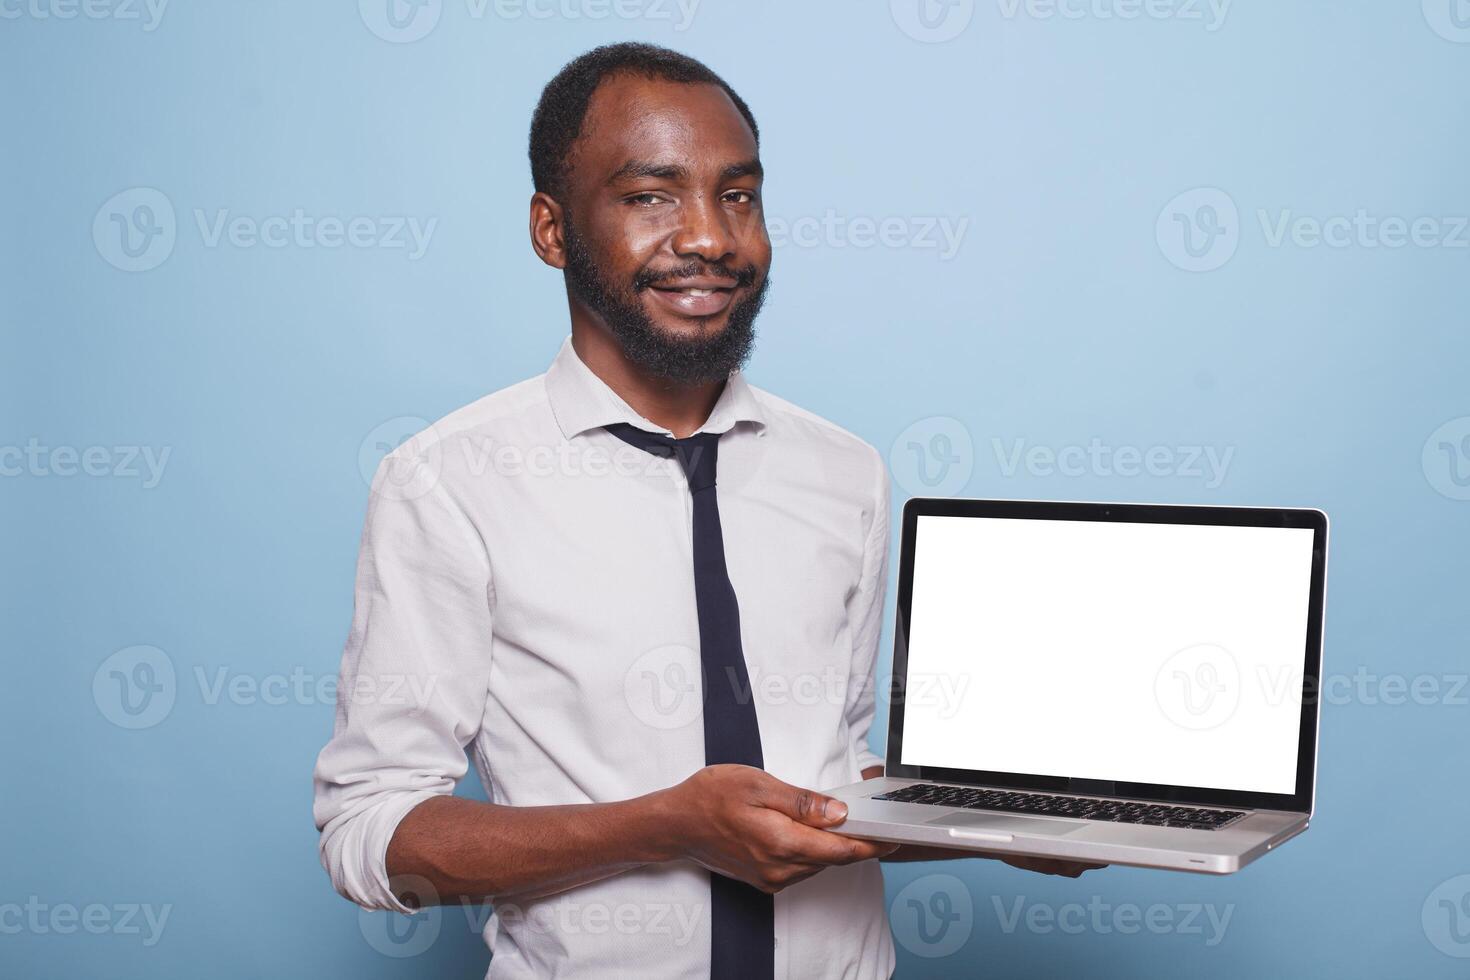 sonriente africano americano persona de libre dedicación regalos un ordenador portátil con un blanco pantalla como negocio Bosquejo concepto. empresario en blanco camisa sostiene inalámbrico computadora mostrando blanco chromakey modelo. foto